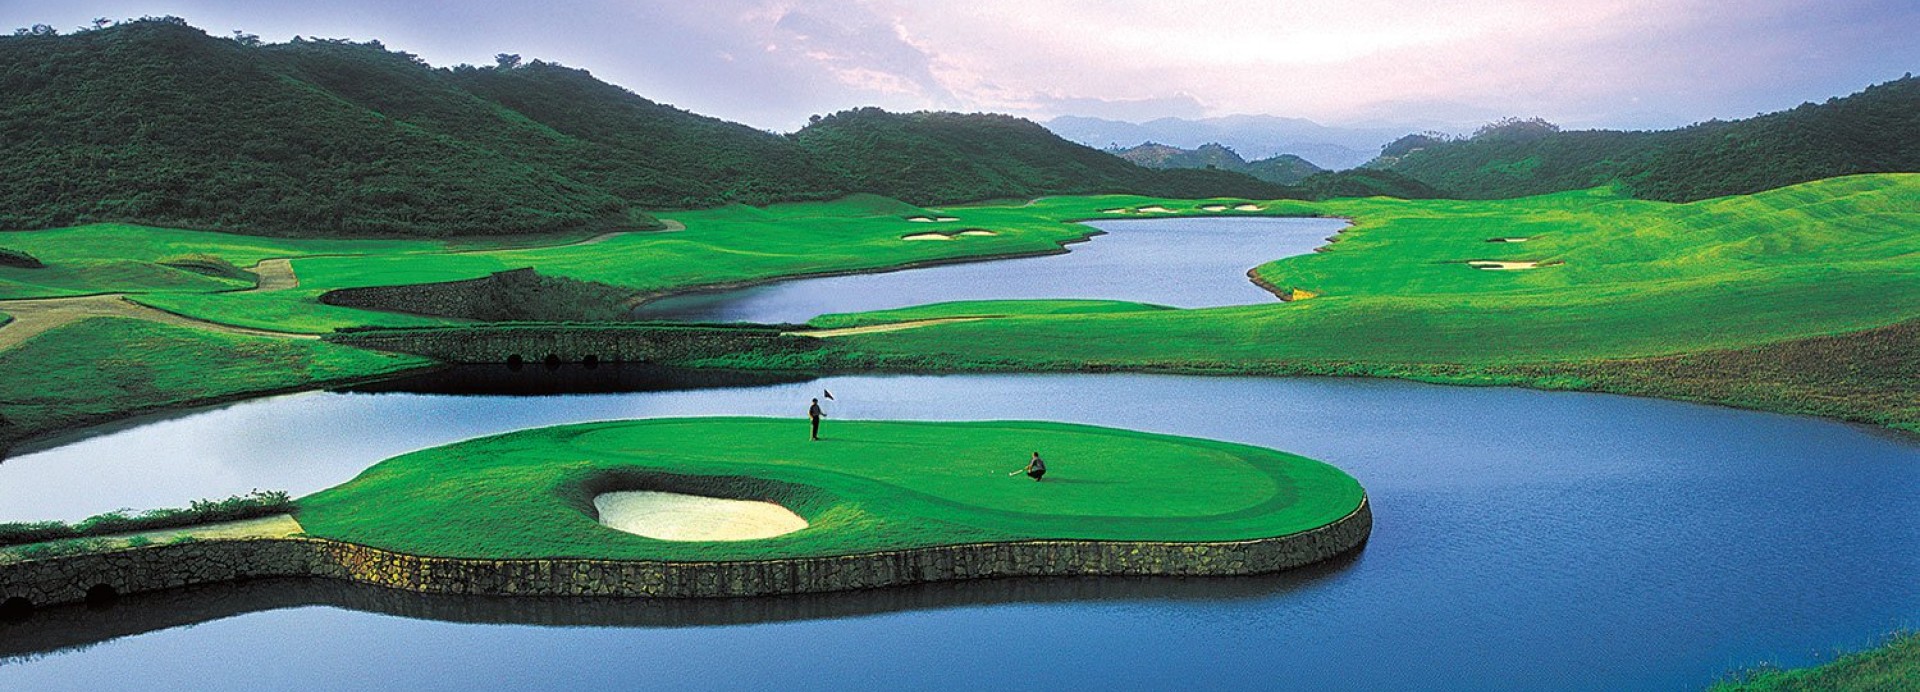 Mission Hills - Shenzen - Faldo Course  | Golfové zájezdy, golfová dovolená, luxusní golf